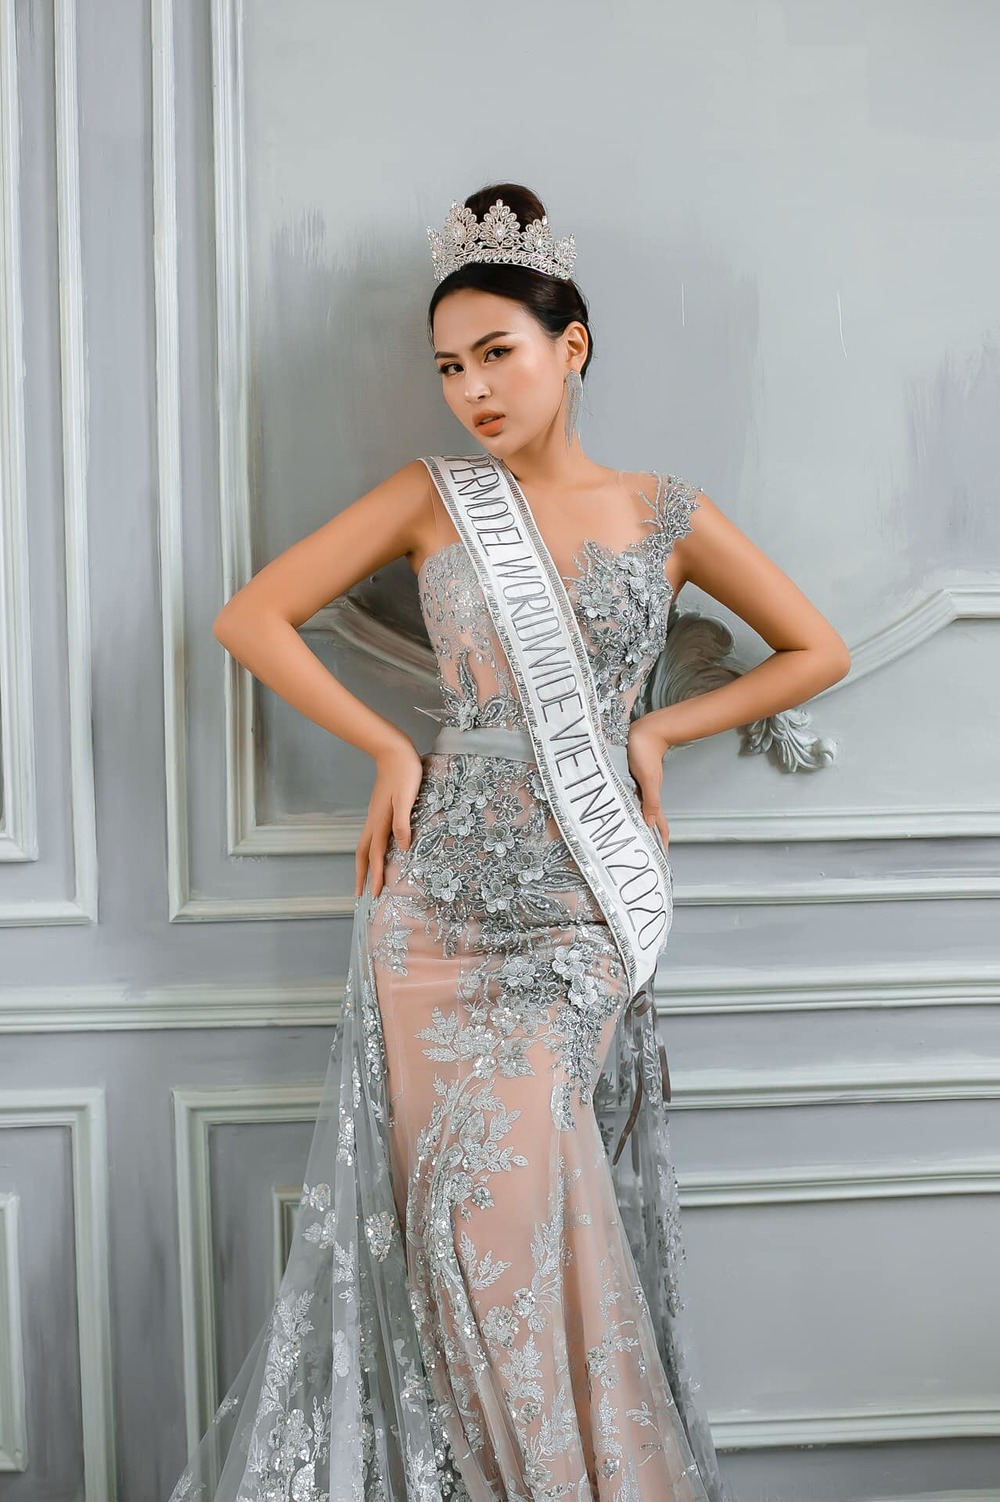  
Đến năm 2018, người đẹp tham gia cuộc thi Ms VietNam Beauty International Pageant và đoạt ngôi vị Hoa hậu Bikini. (Ảnh: FBNV) - Tin sao Viet - Tin tuc sao Viet - Scandal sao Viet - Tin tuc cua Sao - Tin cua Sao